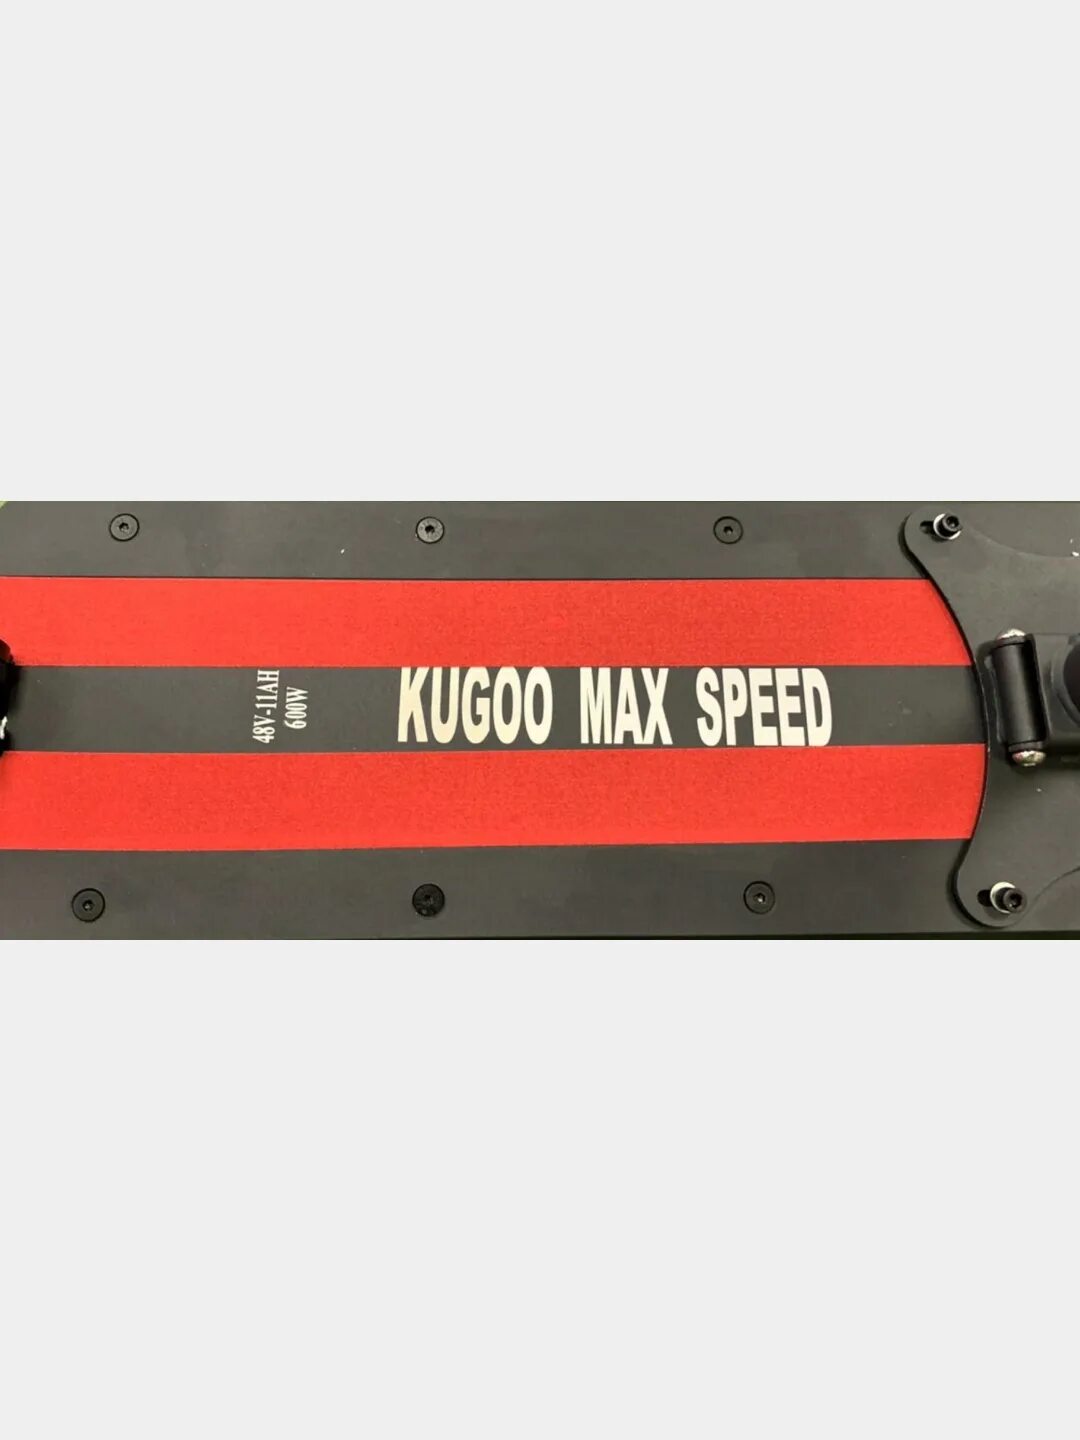 Куго кирин макс. Электросамокат Kugoo Max Speed. Kugoo Max Speed 600w 11 Ah. Электросамокат Kugoo Max Speed 500w 11 Ah. Электросамокат Kugoo Max Speed 600w 48v 11ah.